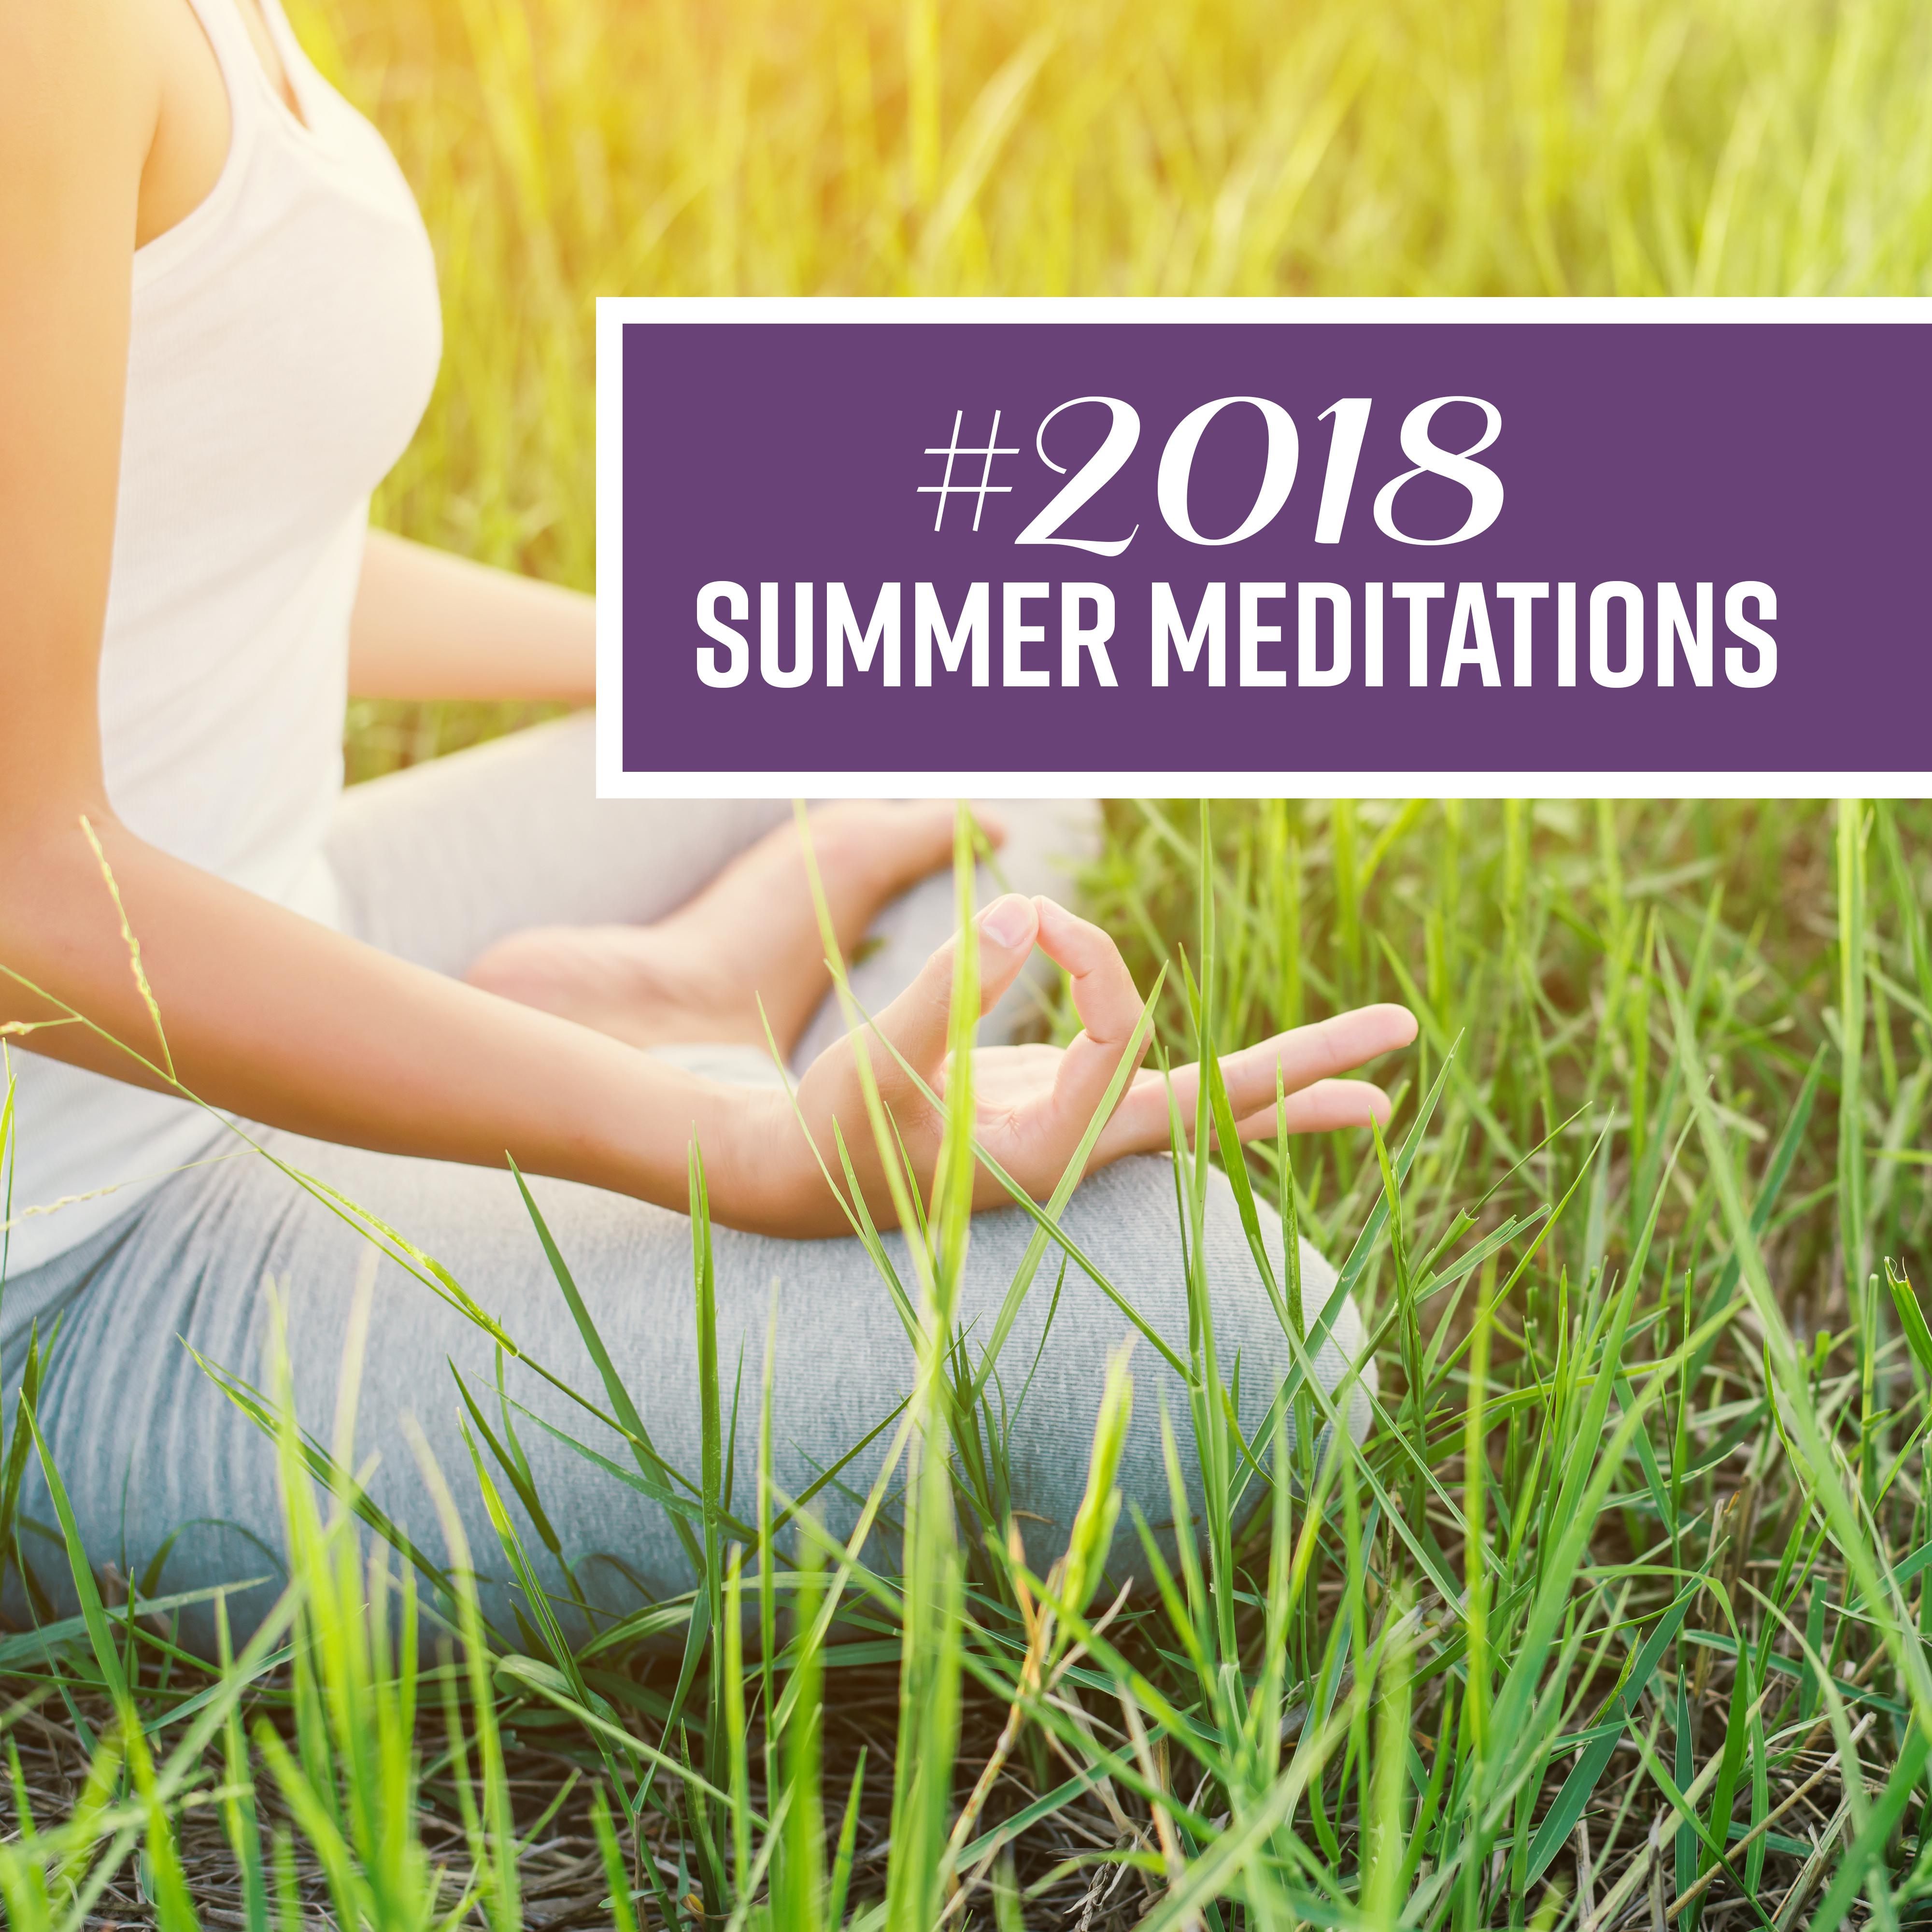 #2018 Summer Meditations